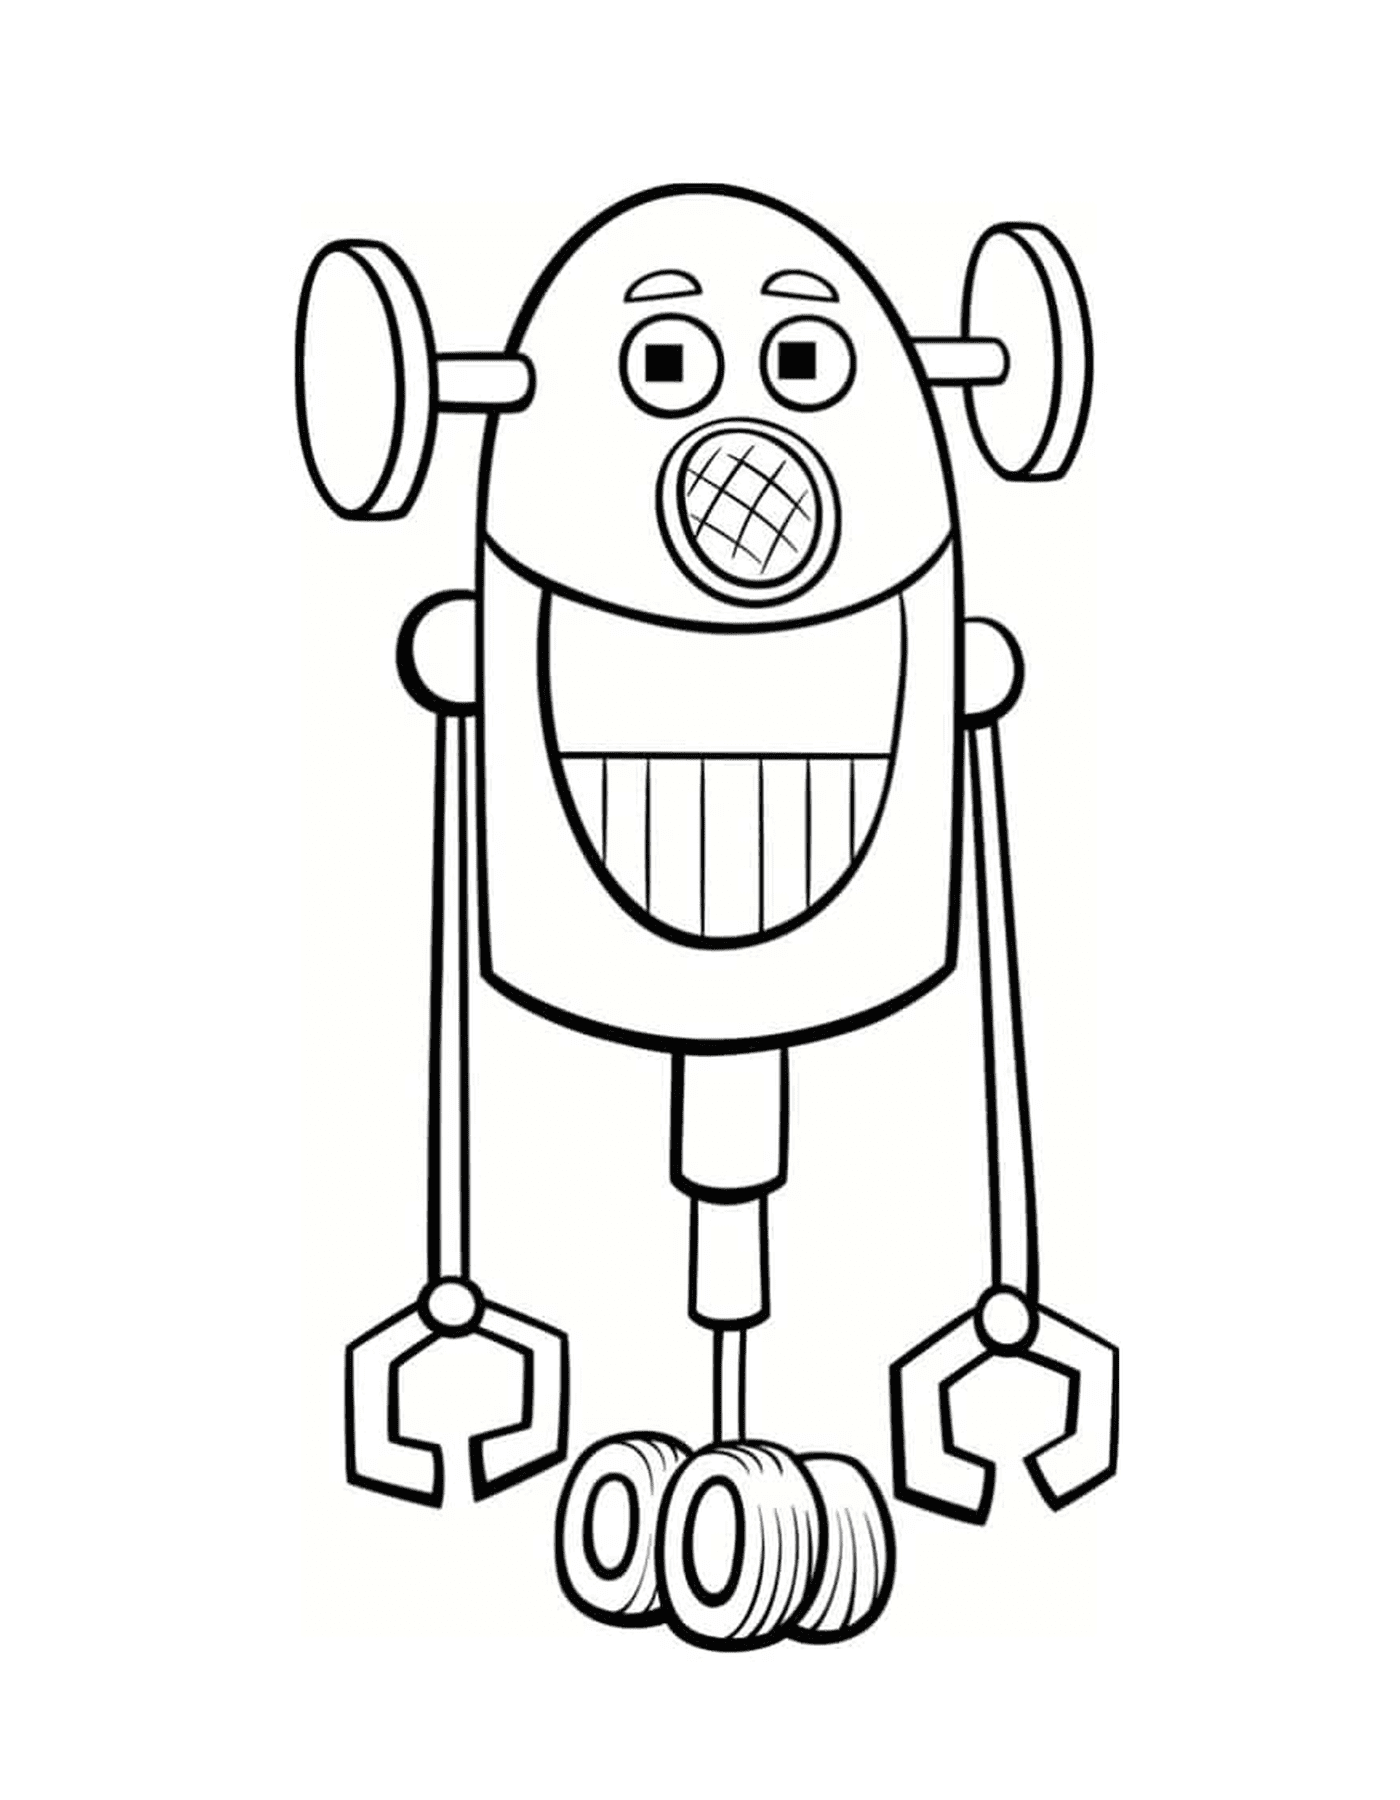  Забавный робот с большой улыбкой 